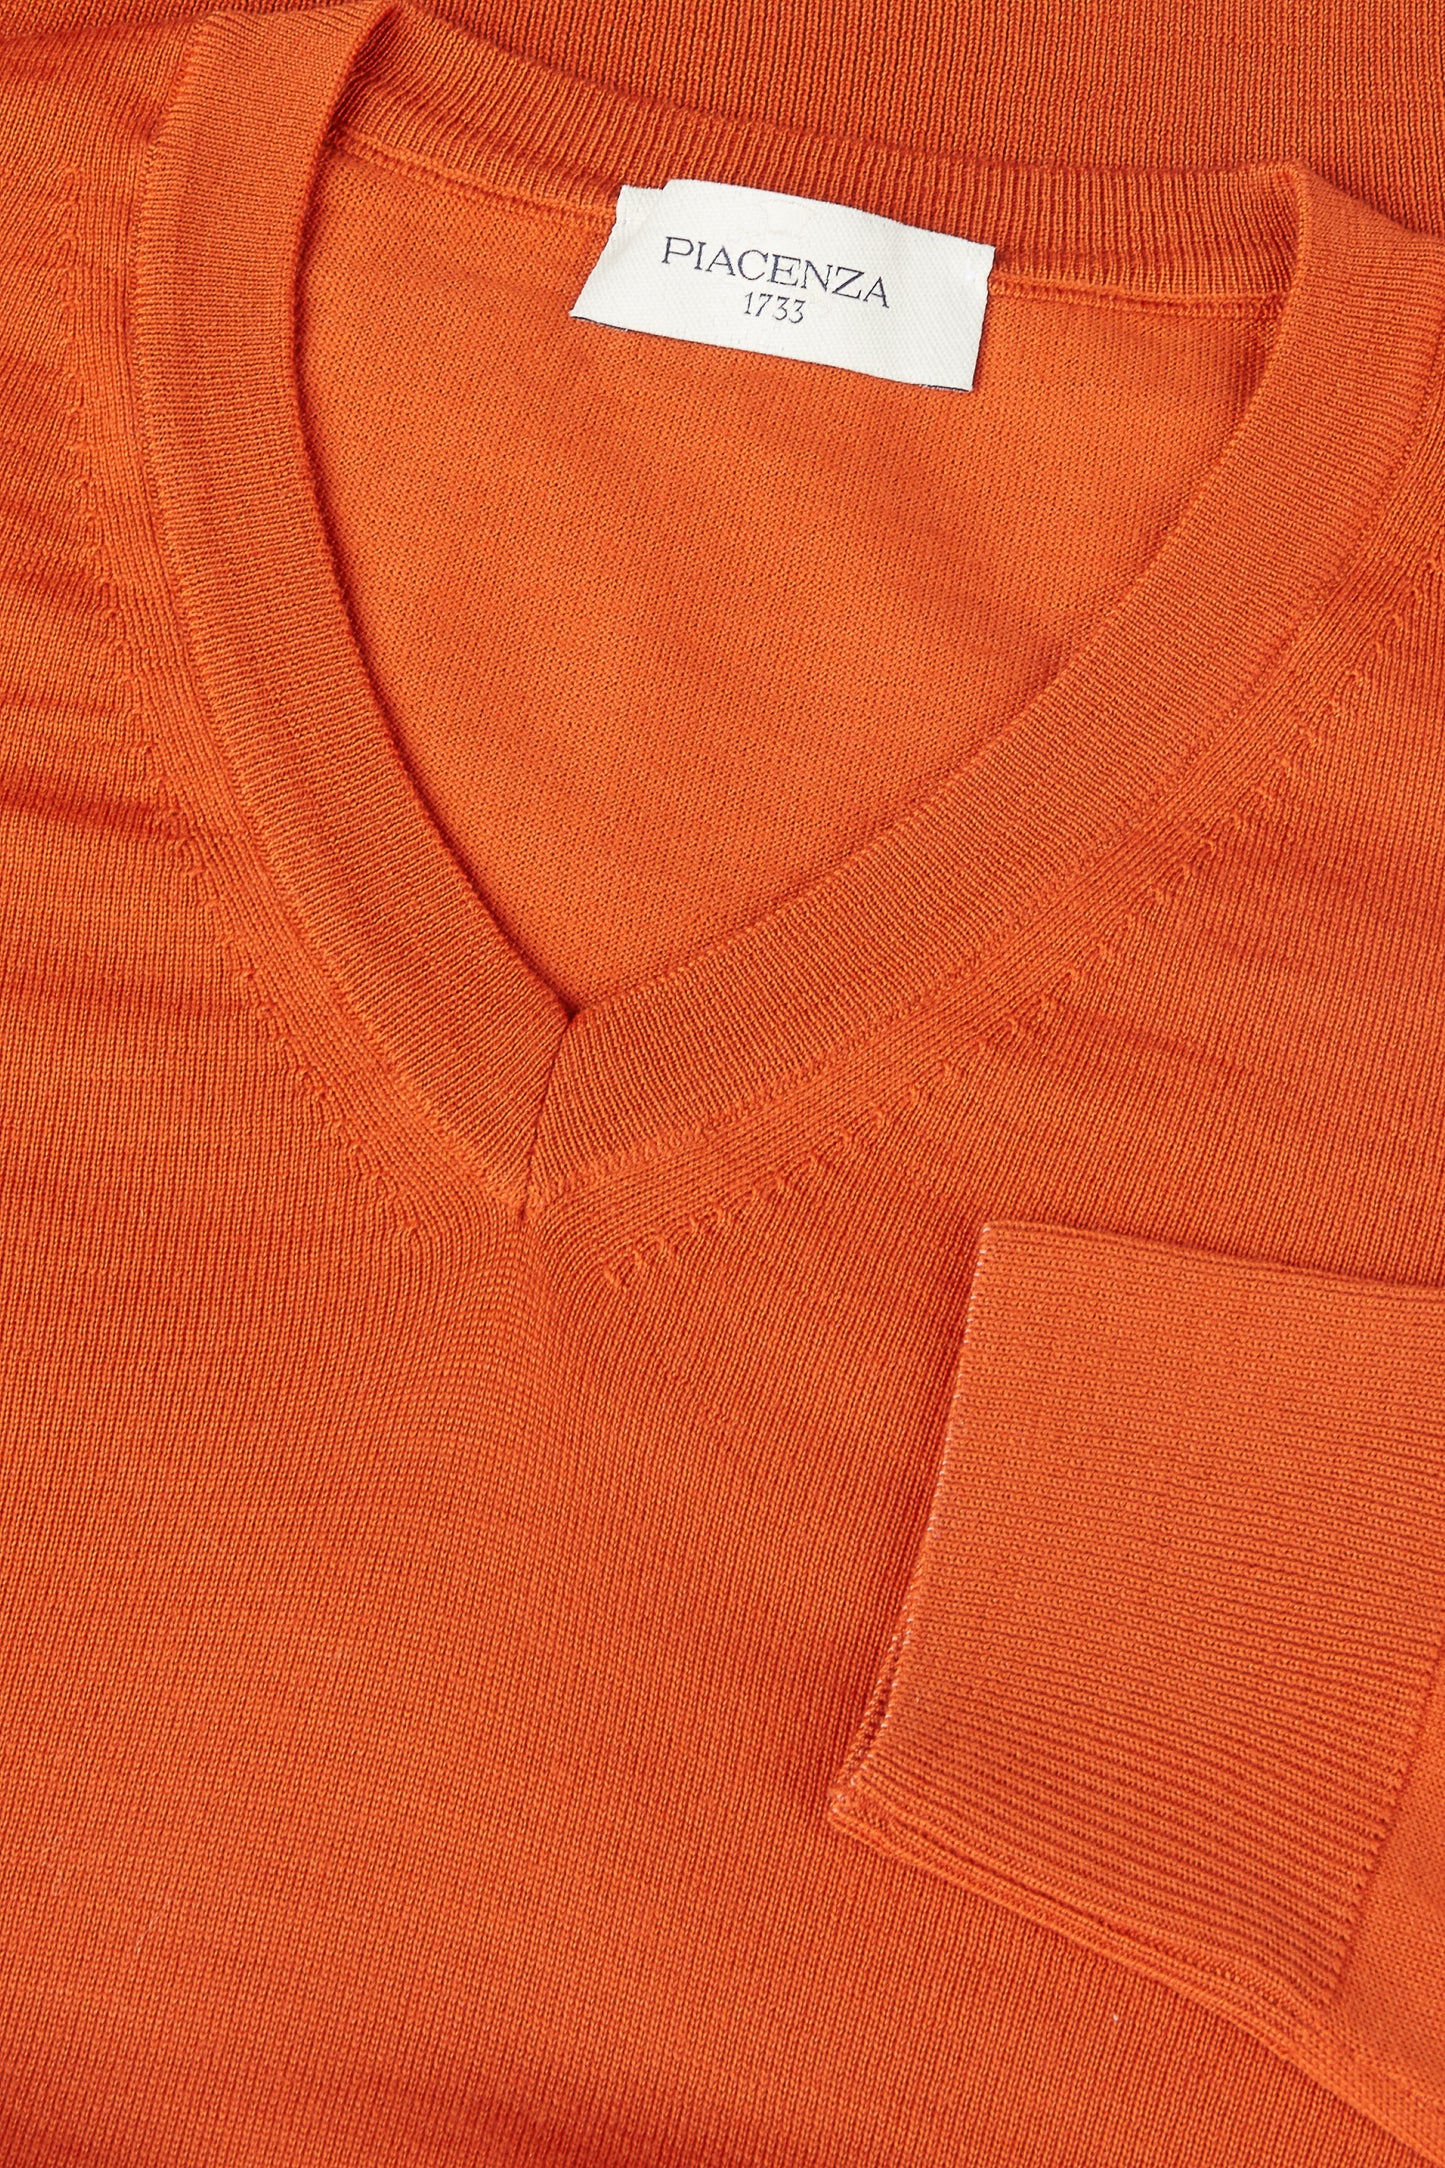 Scollo V lana merino super fine arancio